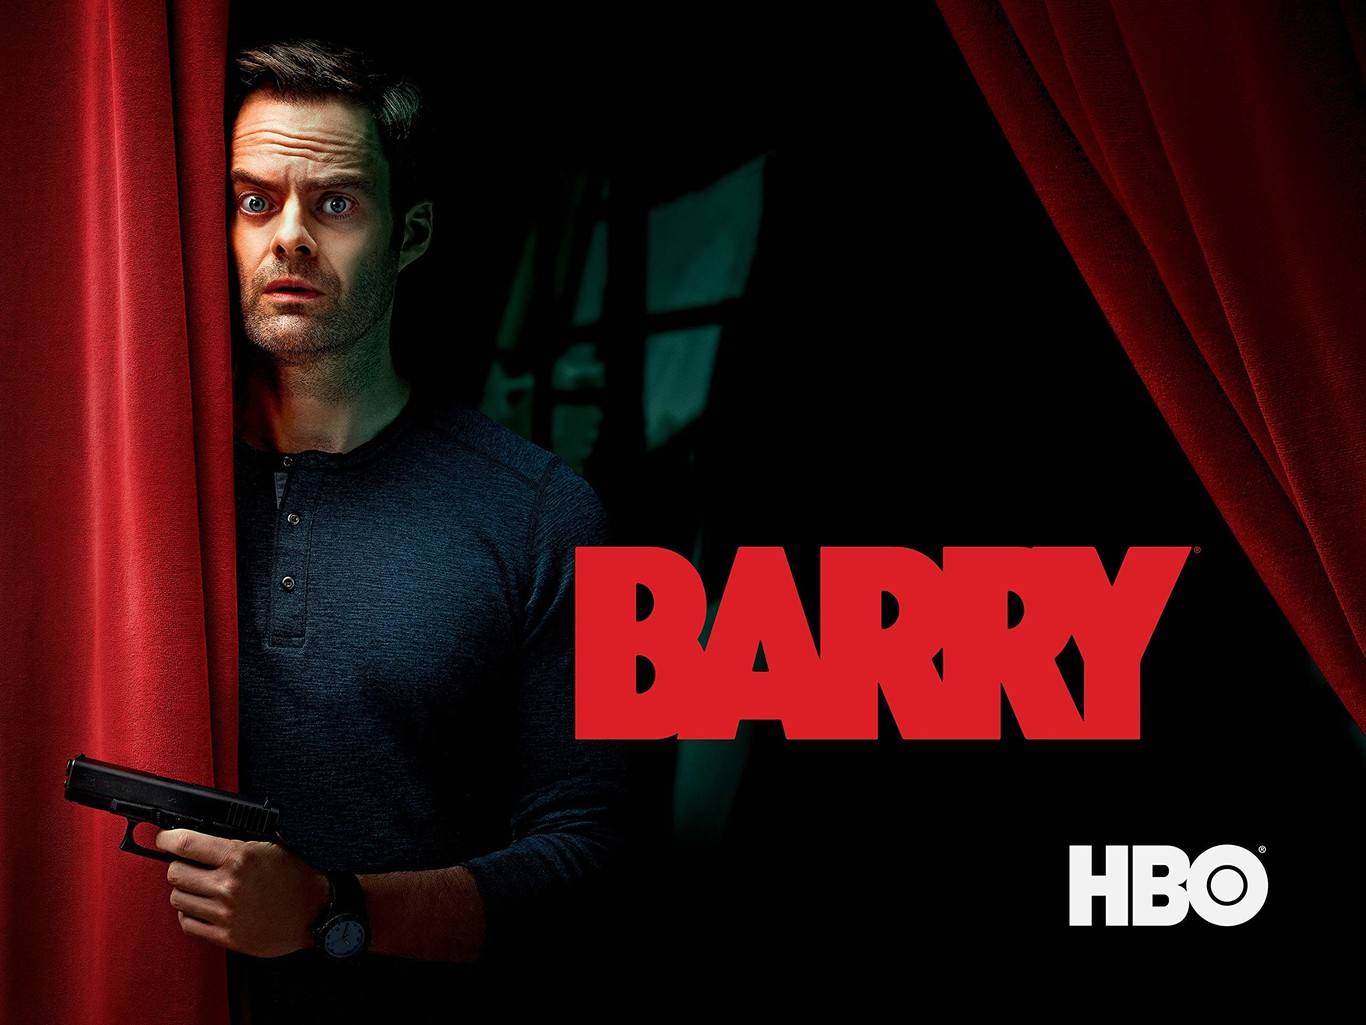 Hay otras series que no son estreno pero que siguen siendo una opción perfecta para distraerse. Barry, de HBO, es una de ellas, que relata la historia de un ex-marine que trabaja como asesino a sueldo. 